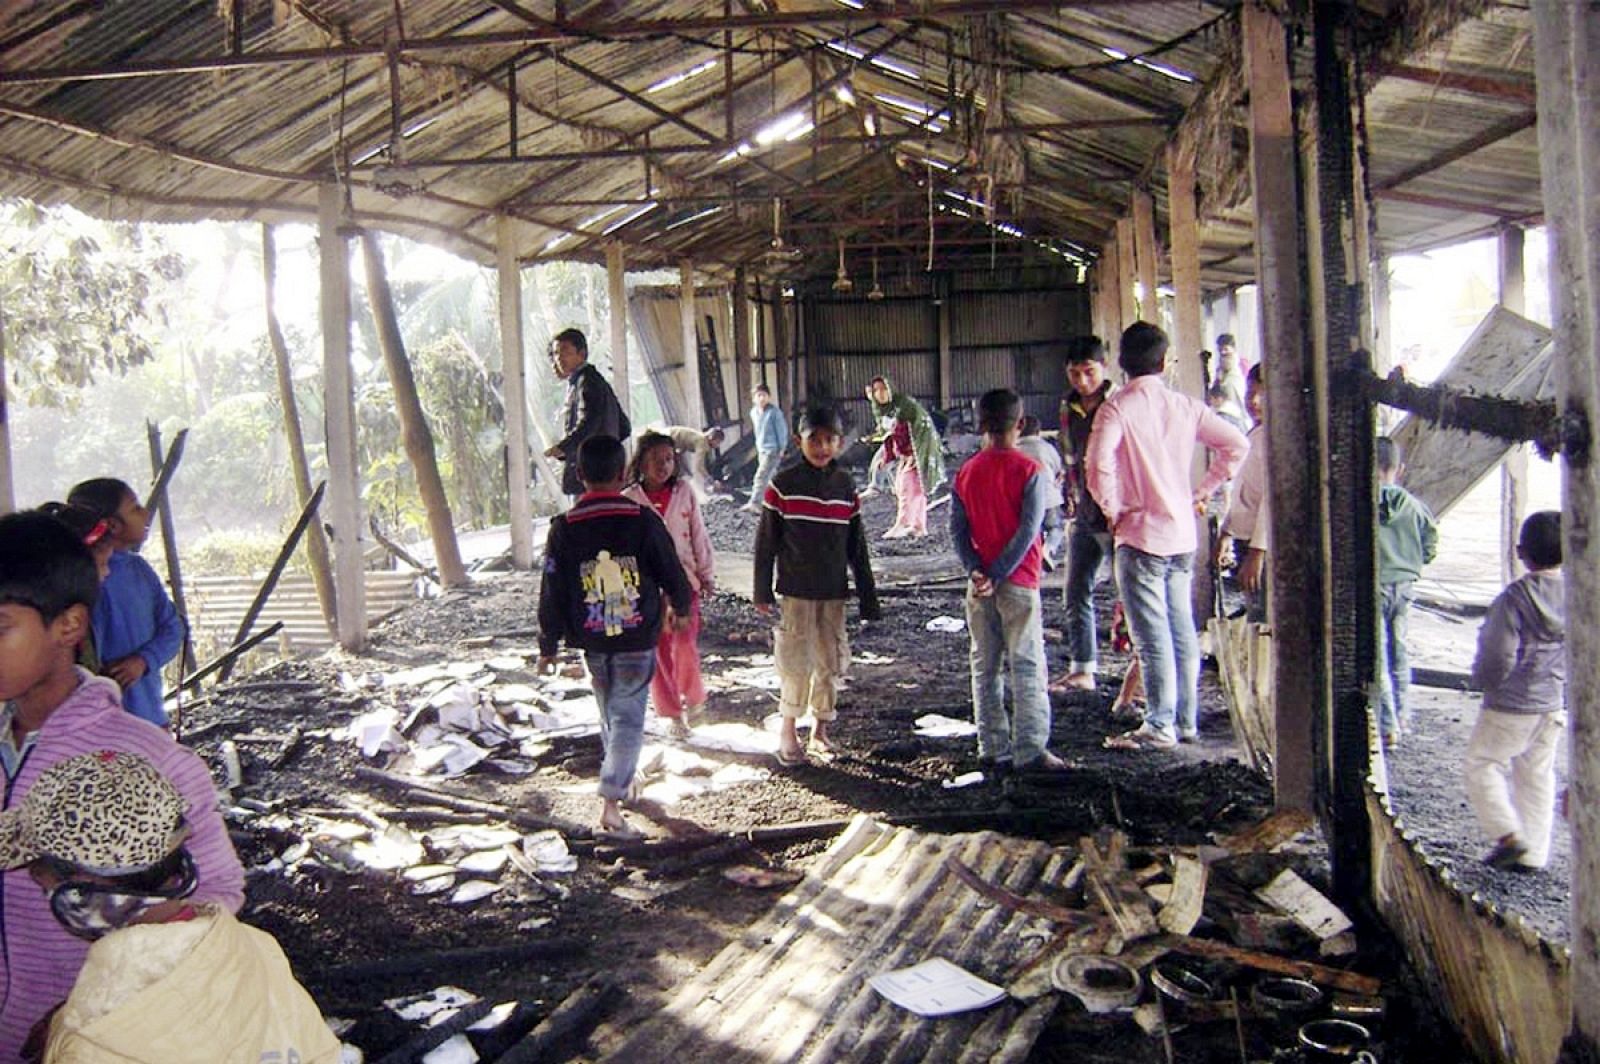 El colegio electoral de Feni, en Bangladesh, tras ser quemado horas antes de las elecciones